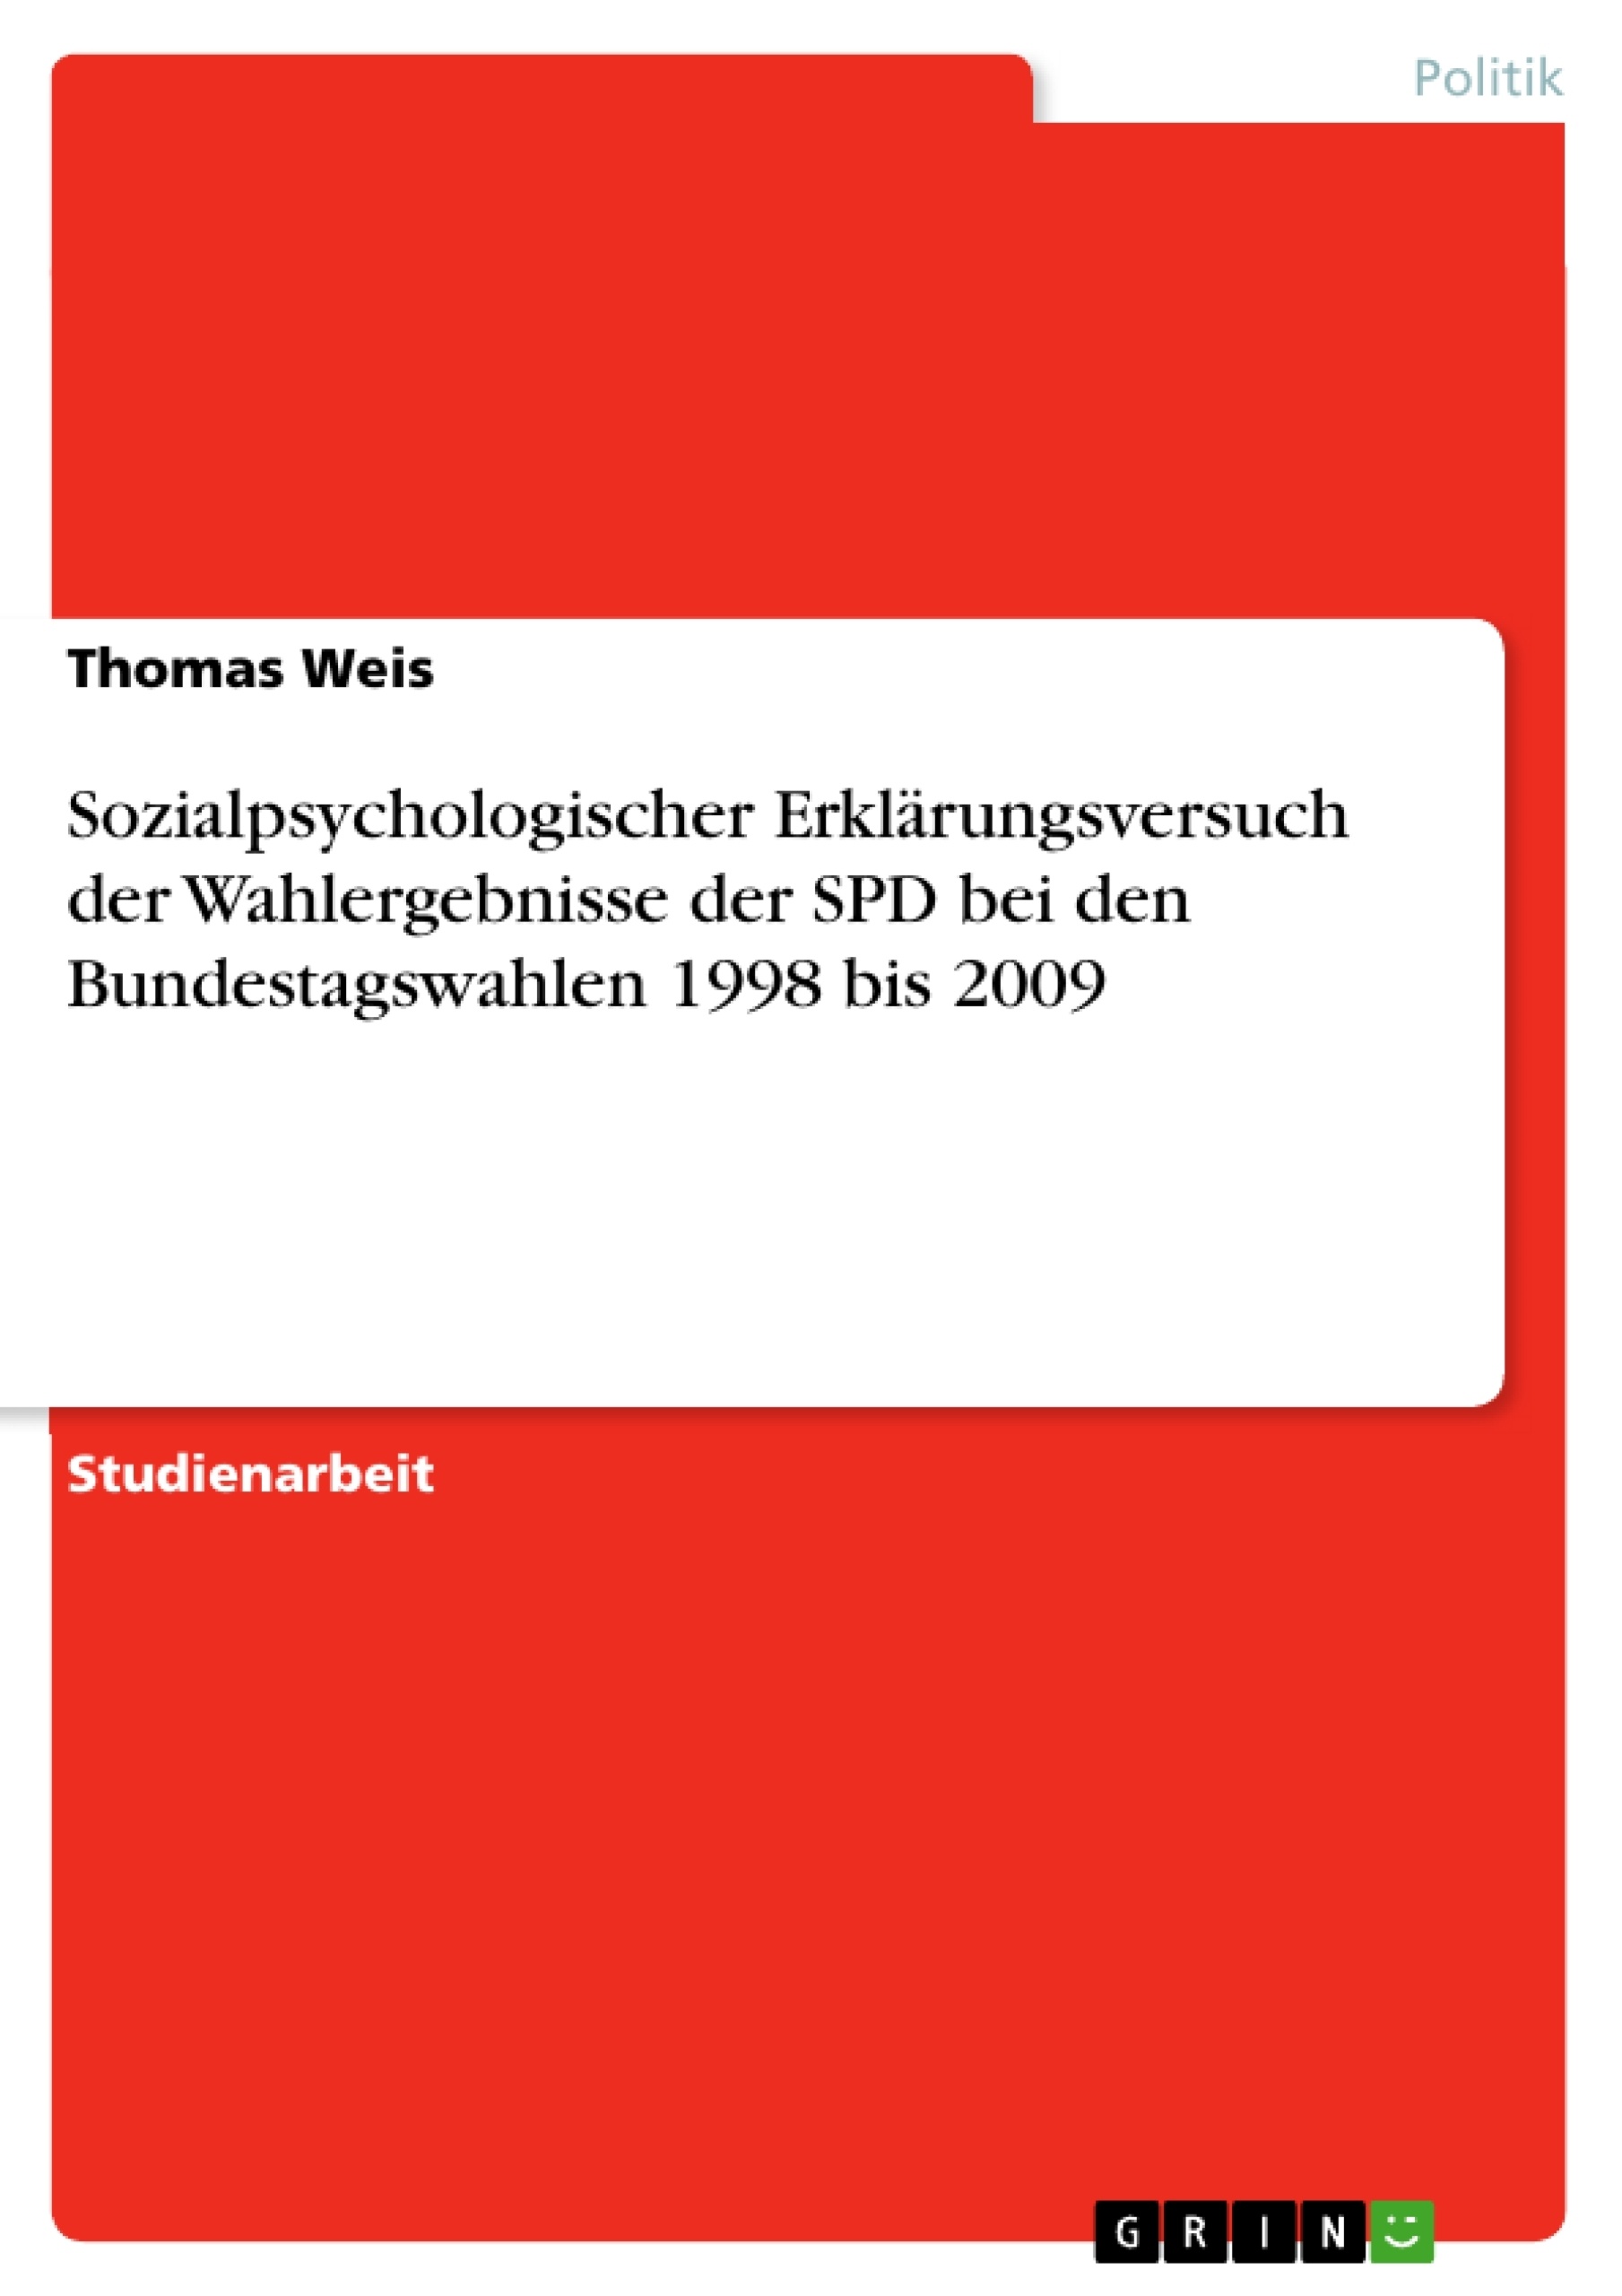 Titre: Sozialpsychologischer Erklärungsversuch der Wahlergebnisse der SPD bei den Bundestagswahlen 1998 bis 2009